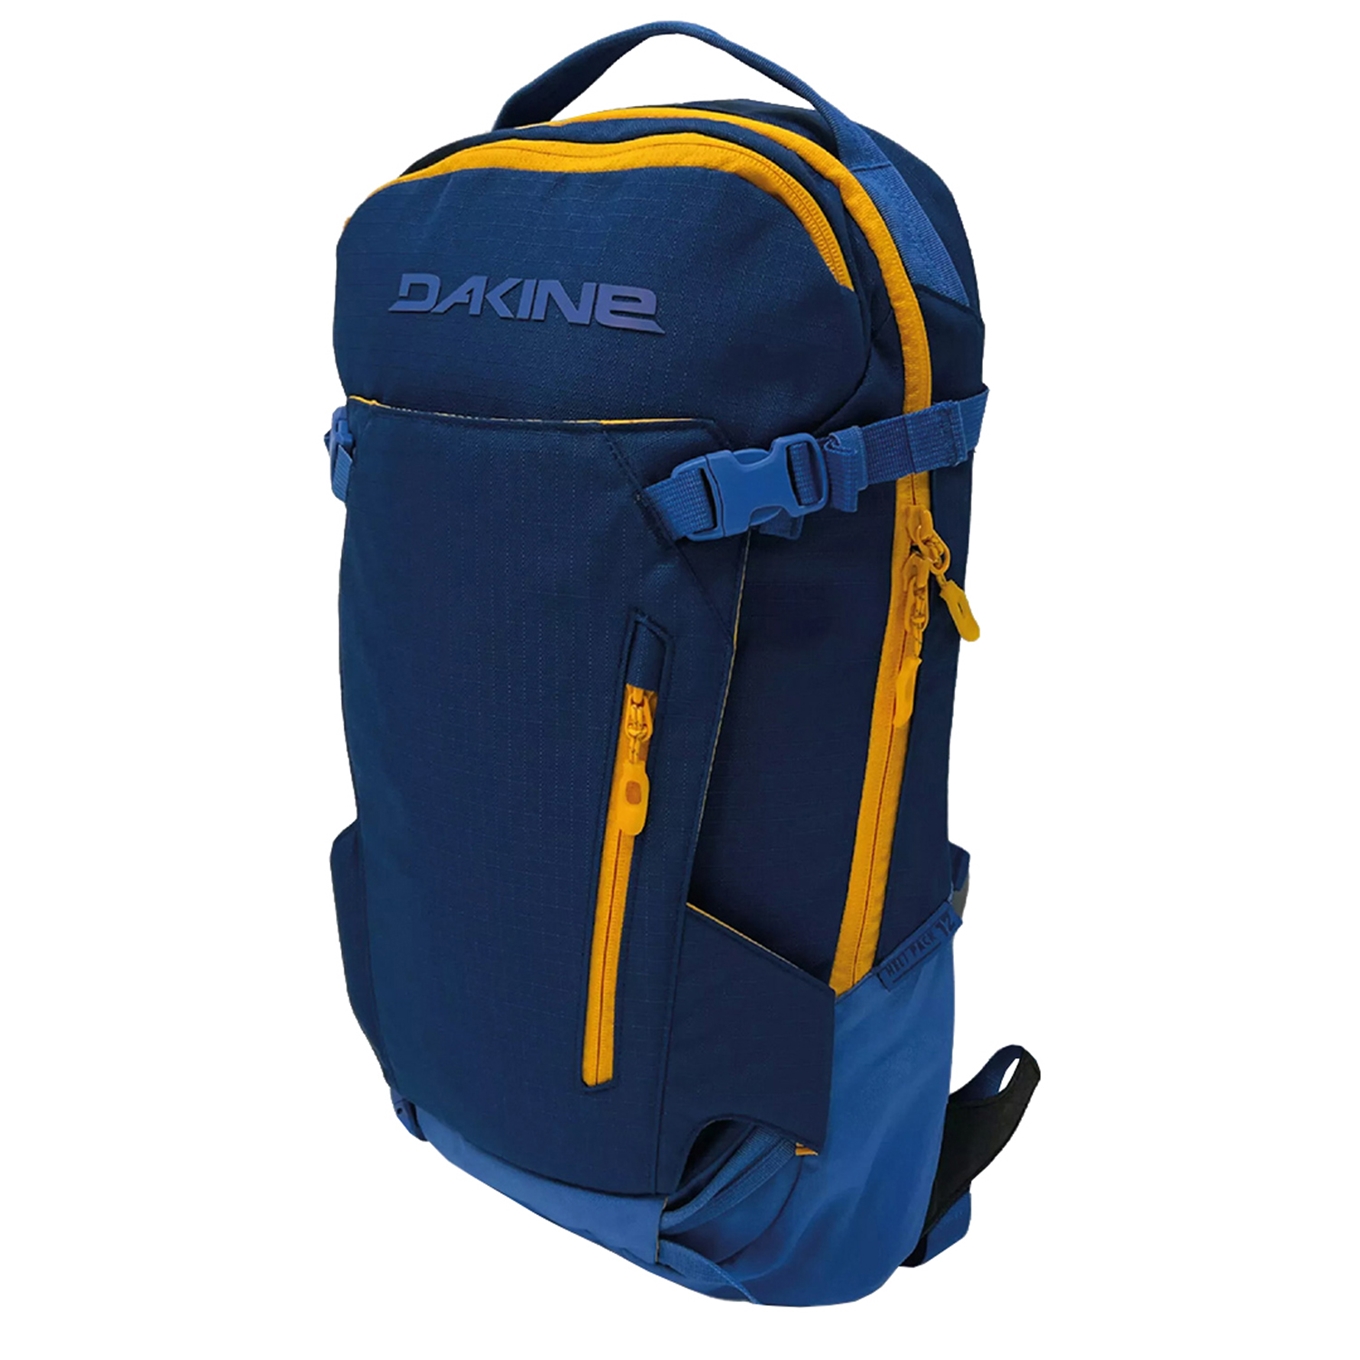 Dakine Heli Pack 12L deep blue backpack